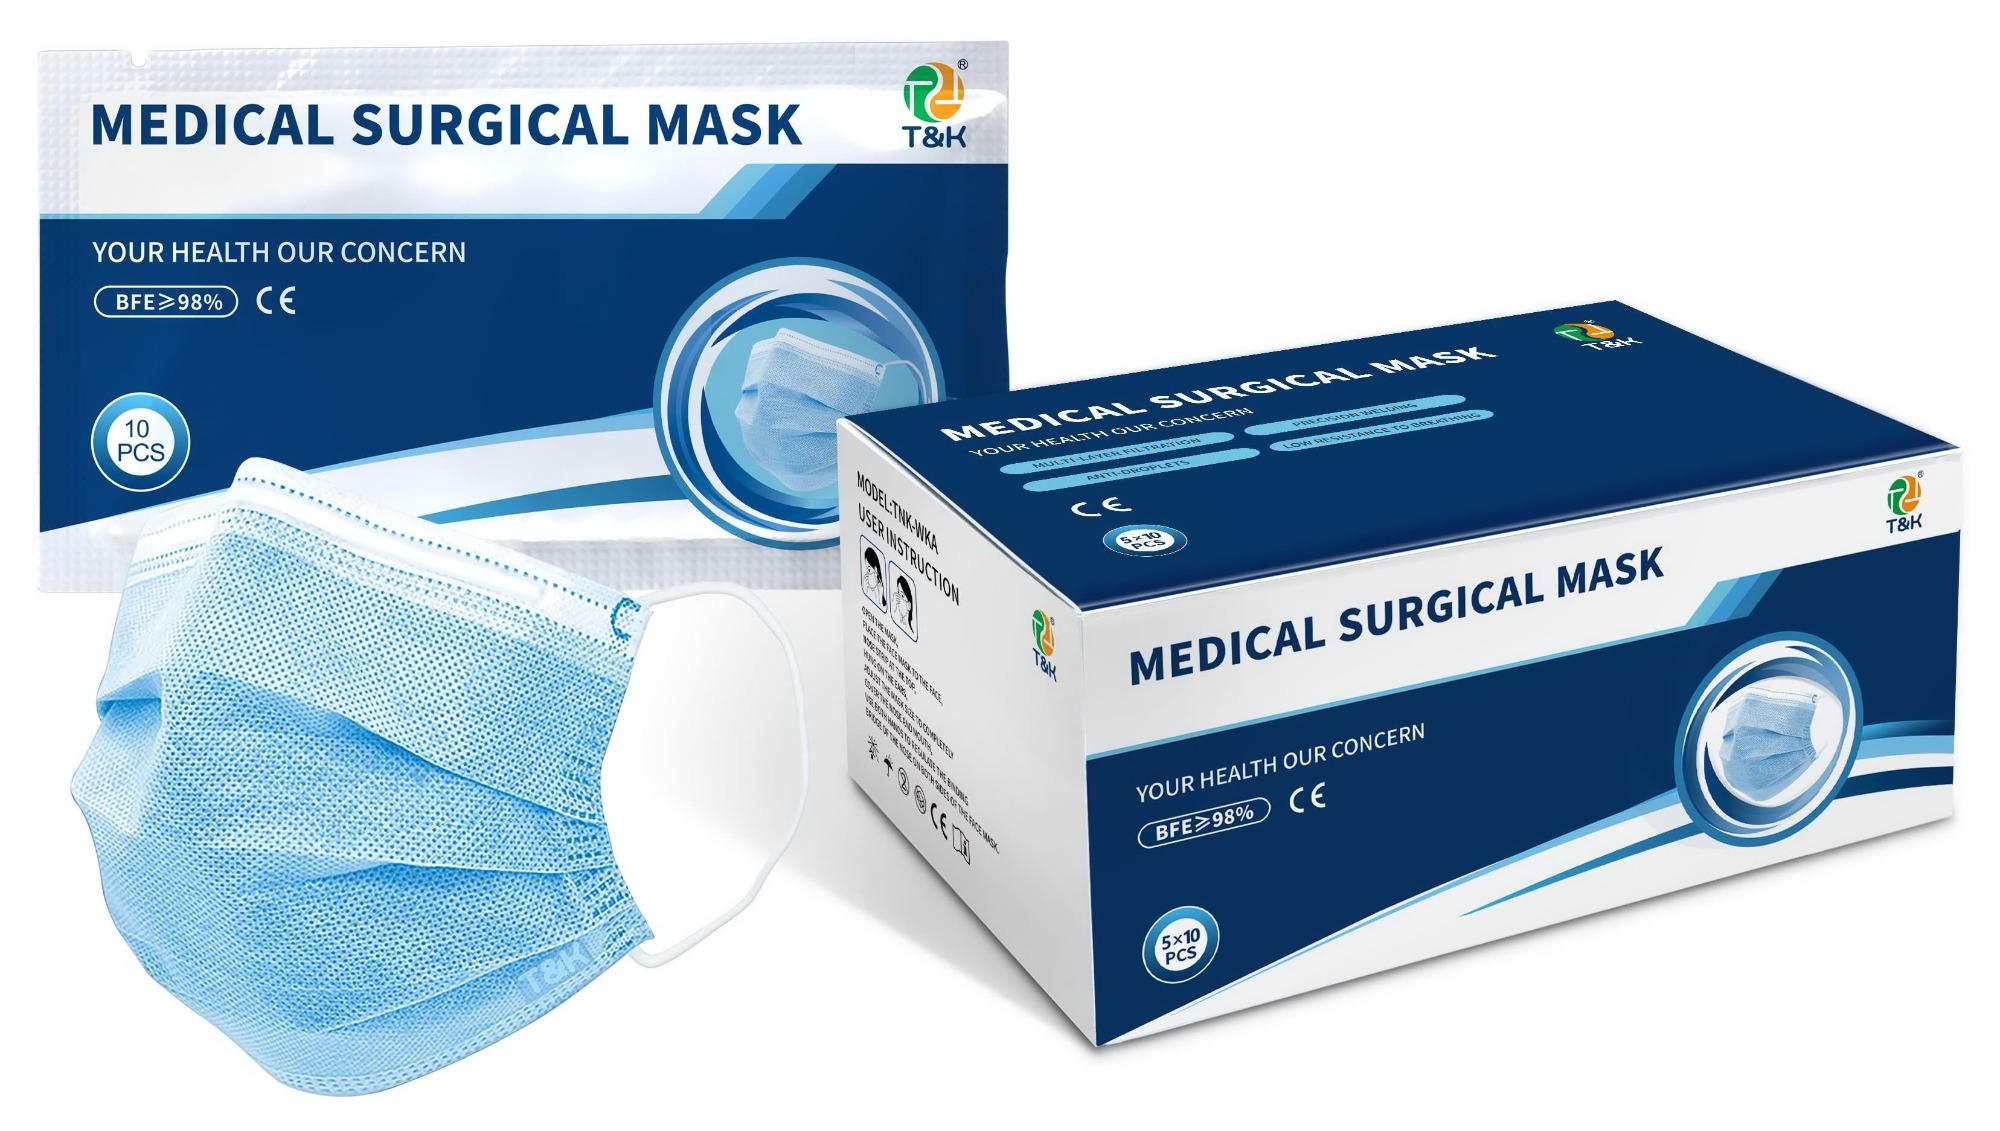 Le maschere mediche sono impermeabili e come fai a sapere se sono maschere mediche? - famosa azienda di maschere usa e getta